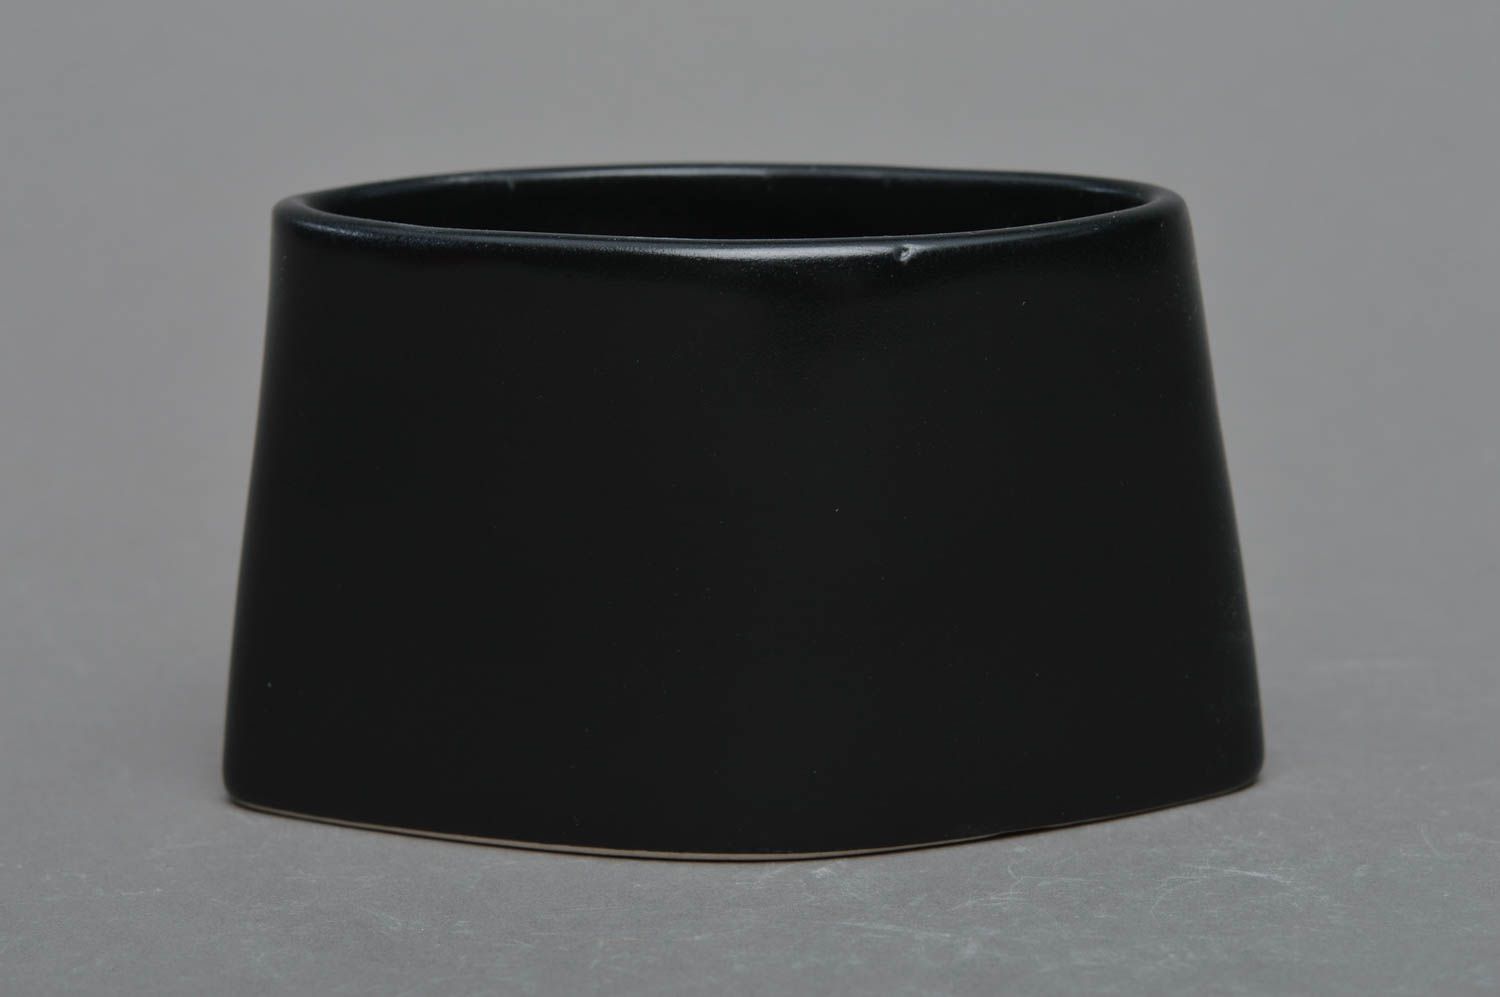 Фарфоровая подставка для салфеток черная в японском стиле ручной работы фото 1